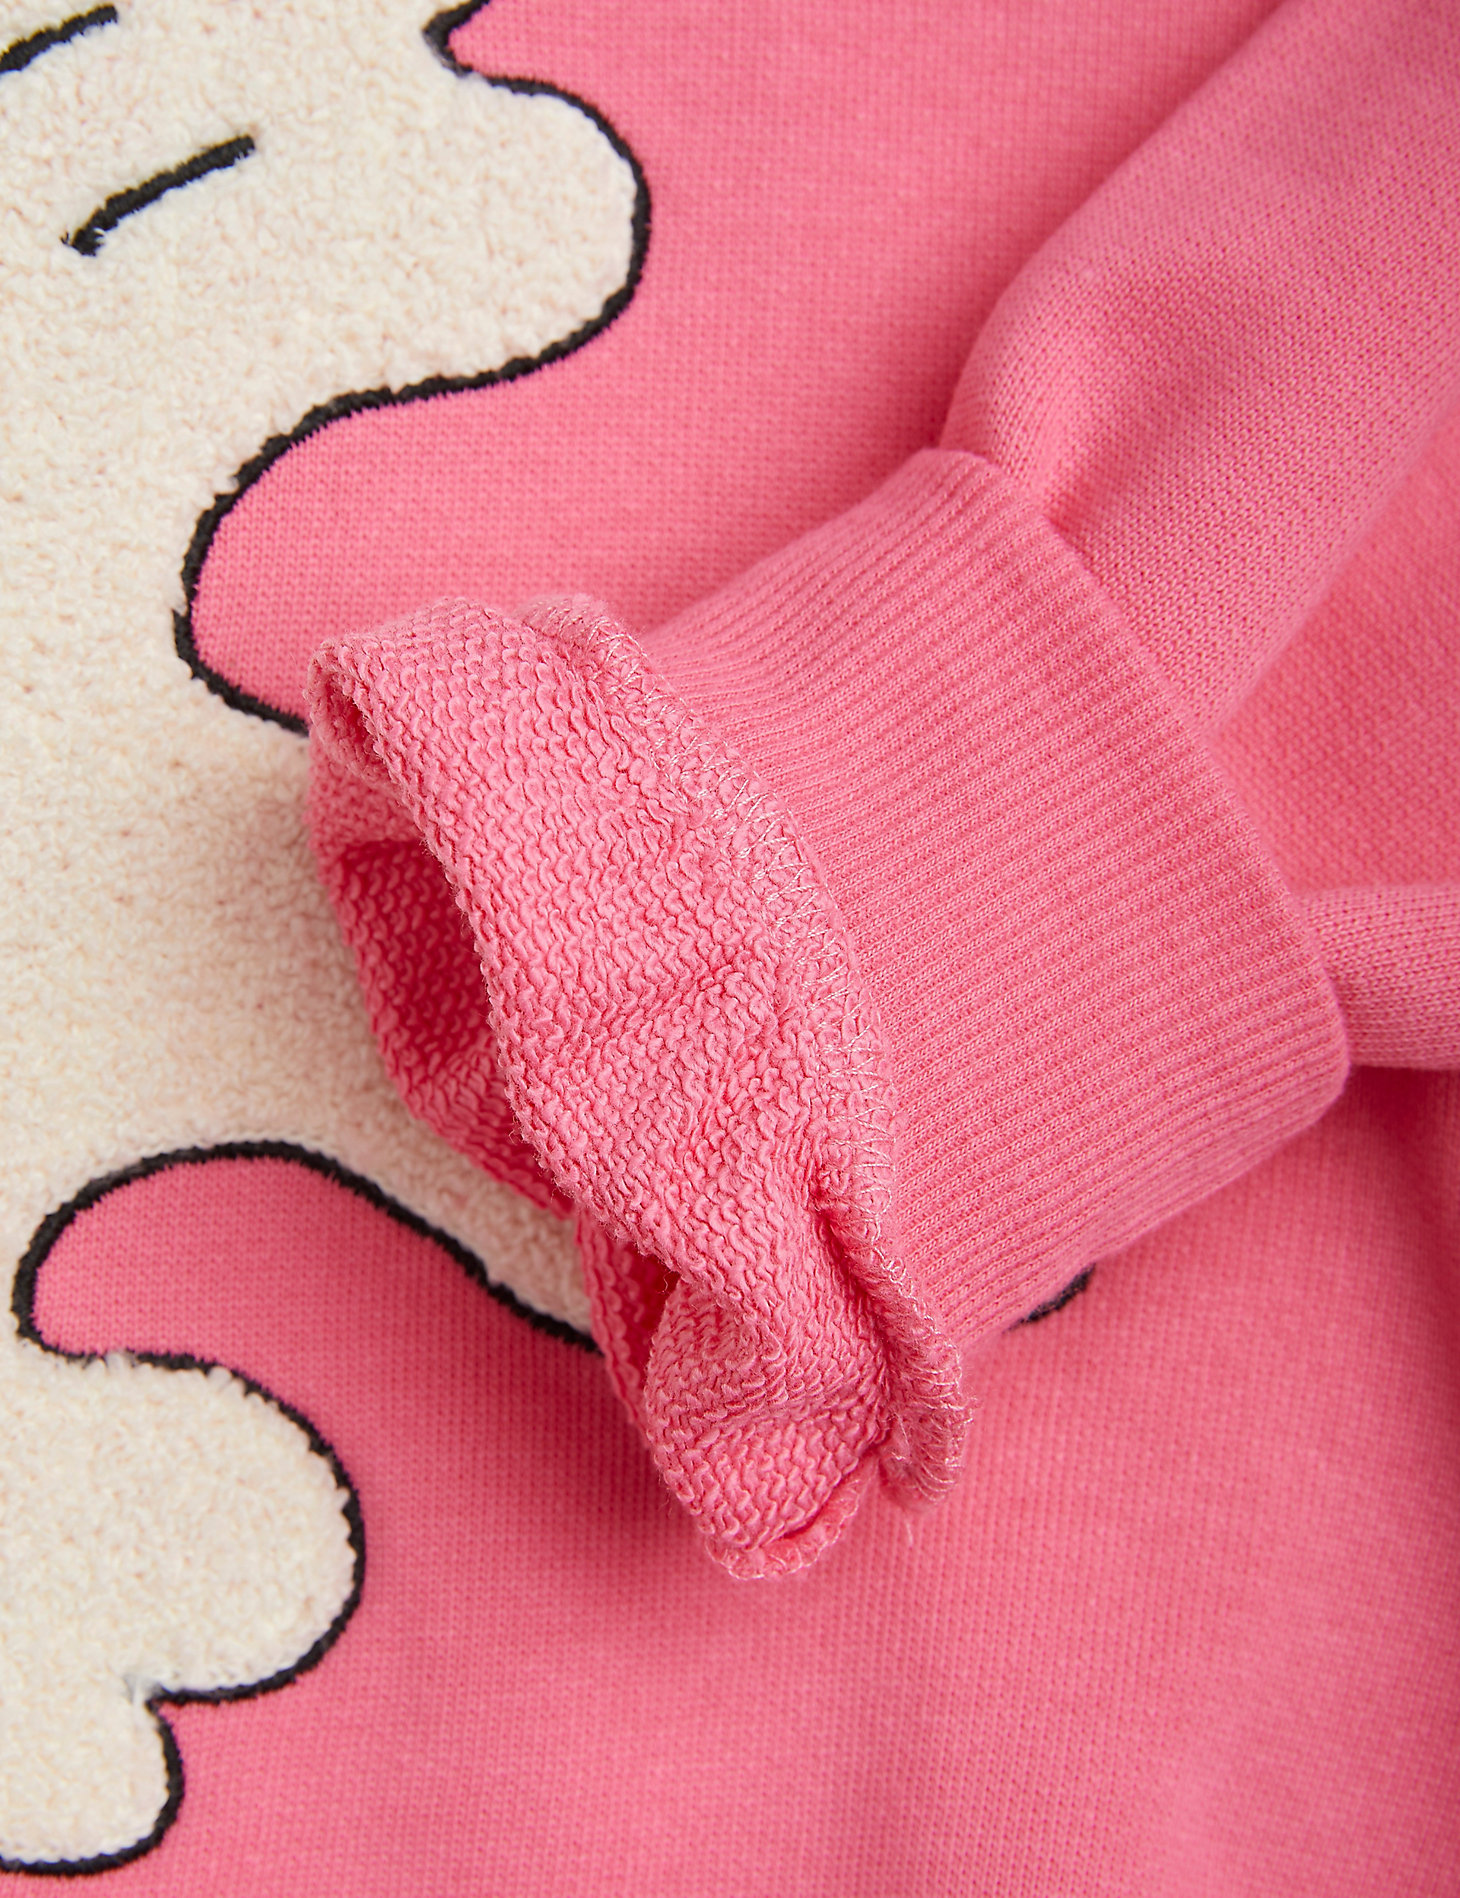 Mini Rodini x Wrangler Peace Dove Chenille Sweatshirt in Pink alternative view 2